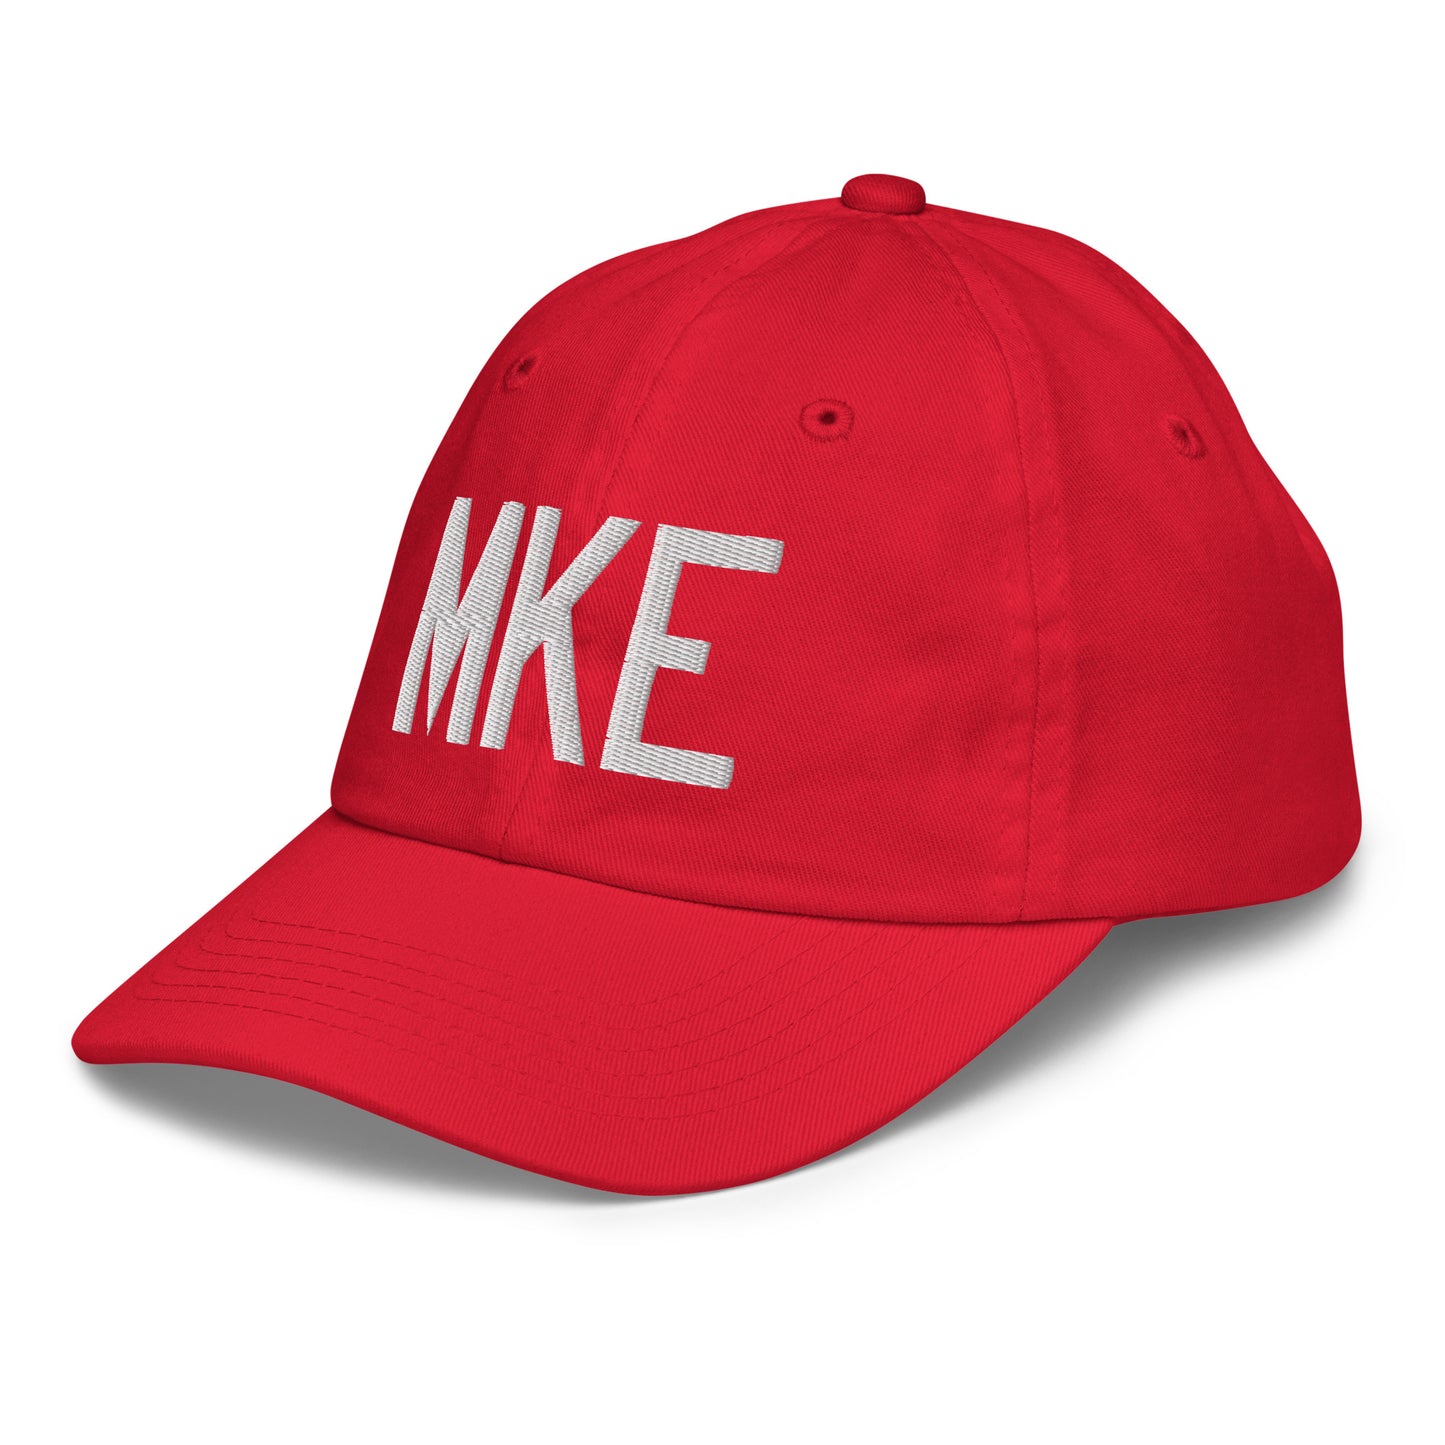 Airport Code Kid's Baseball Cap - White • MKE Milwaukee • YHM Designs - Image 19